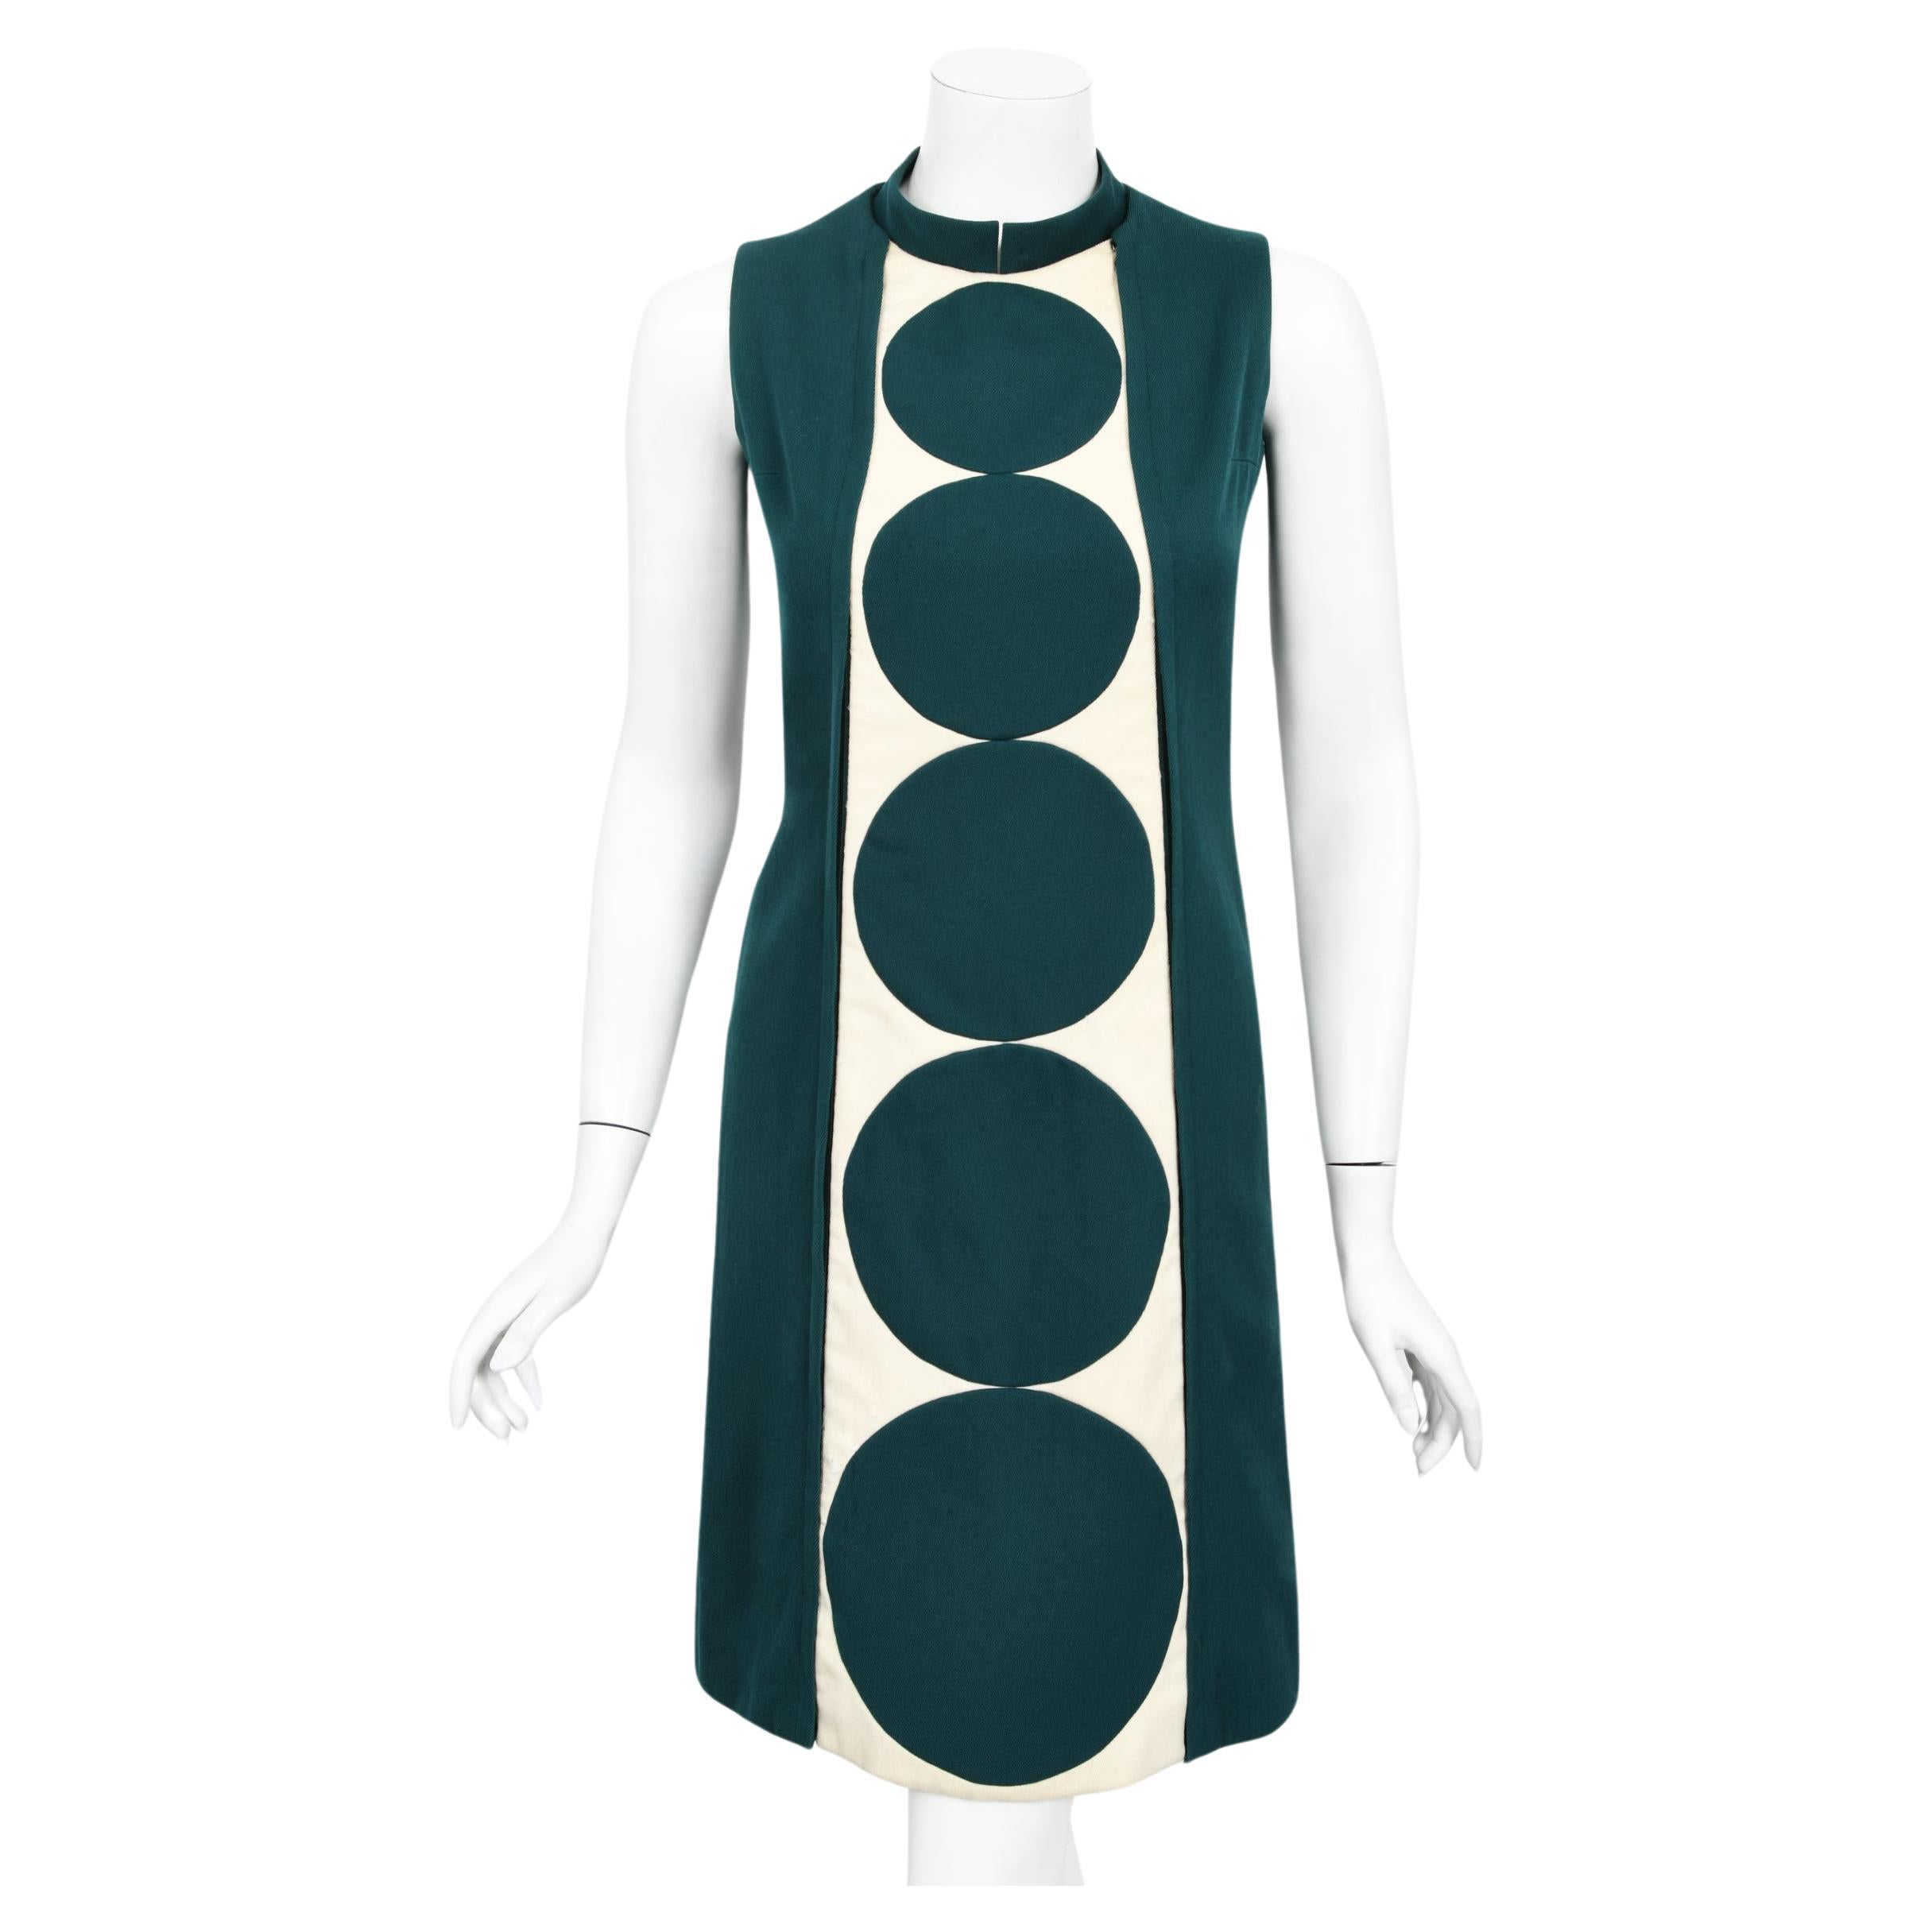 Vintage 1966 Jacques Esterel Haute Couture Documented Teal Blue Op-Art Mod Dress